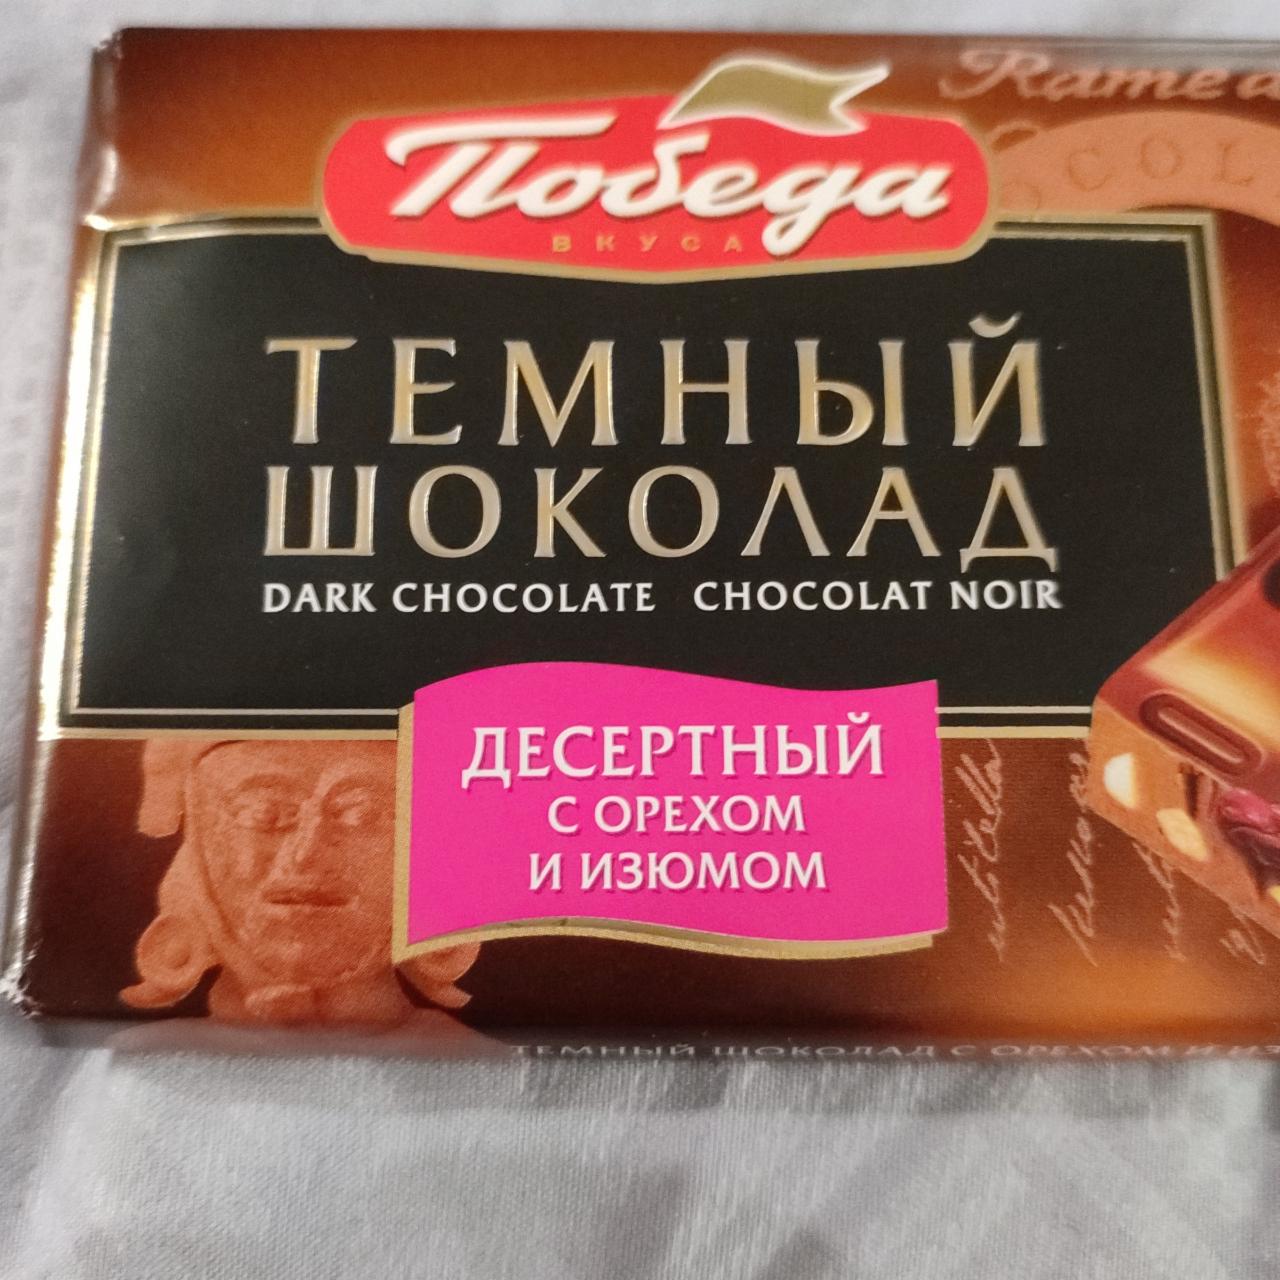 Фото - Шоколад темный десертный с орехом и изюмом Победа вкуса